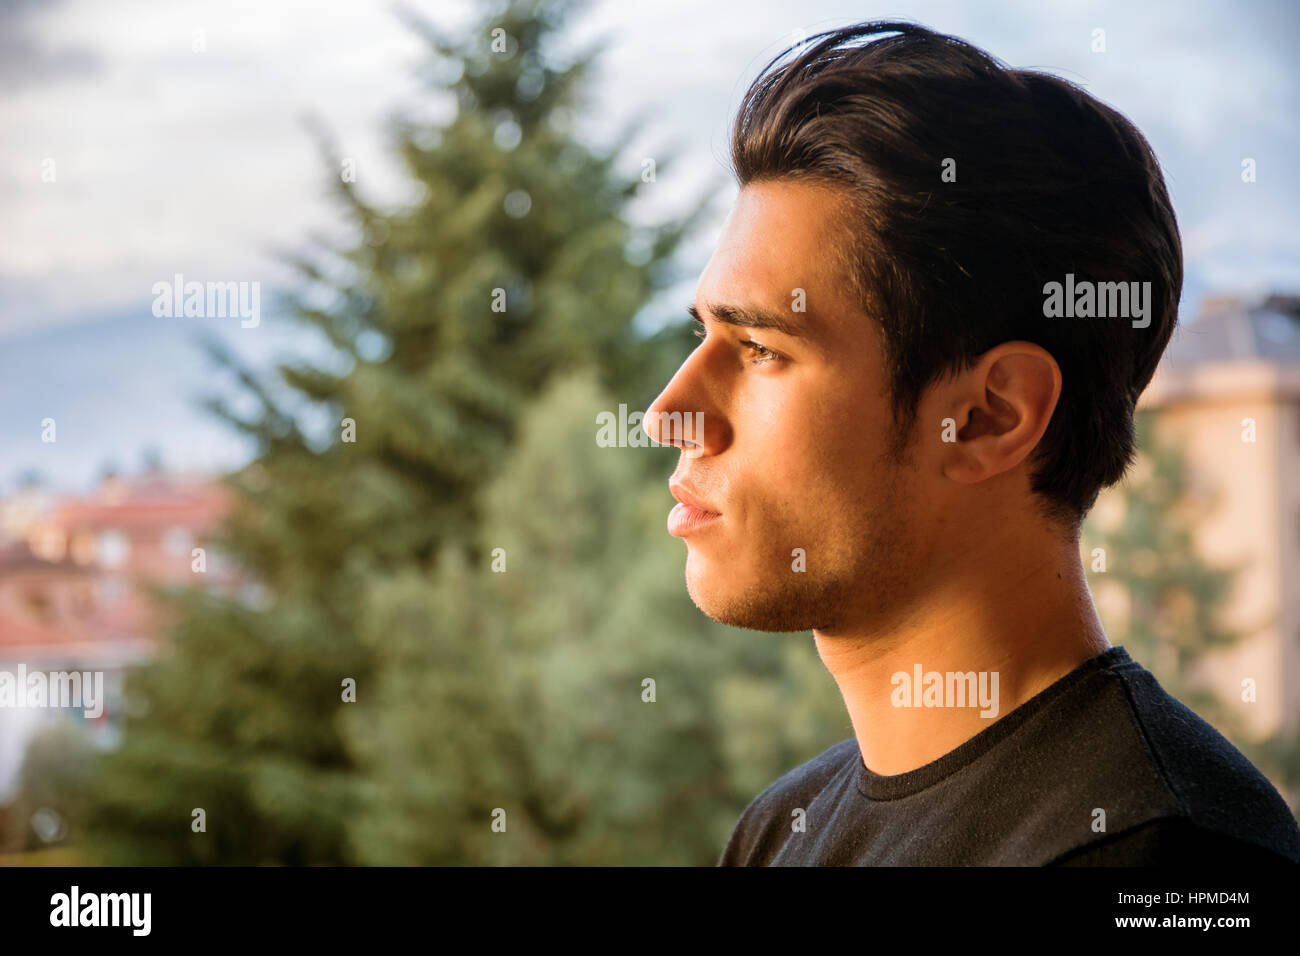 Profil-Kopfschuss von hübscher attraktiver junger Mann im Freien, auf der Suche auf einer Seite Stockfoto